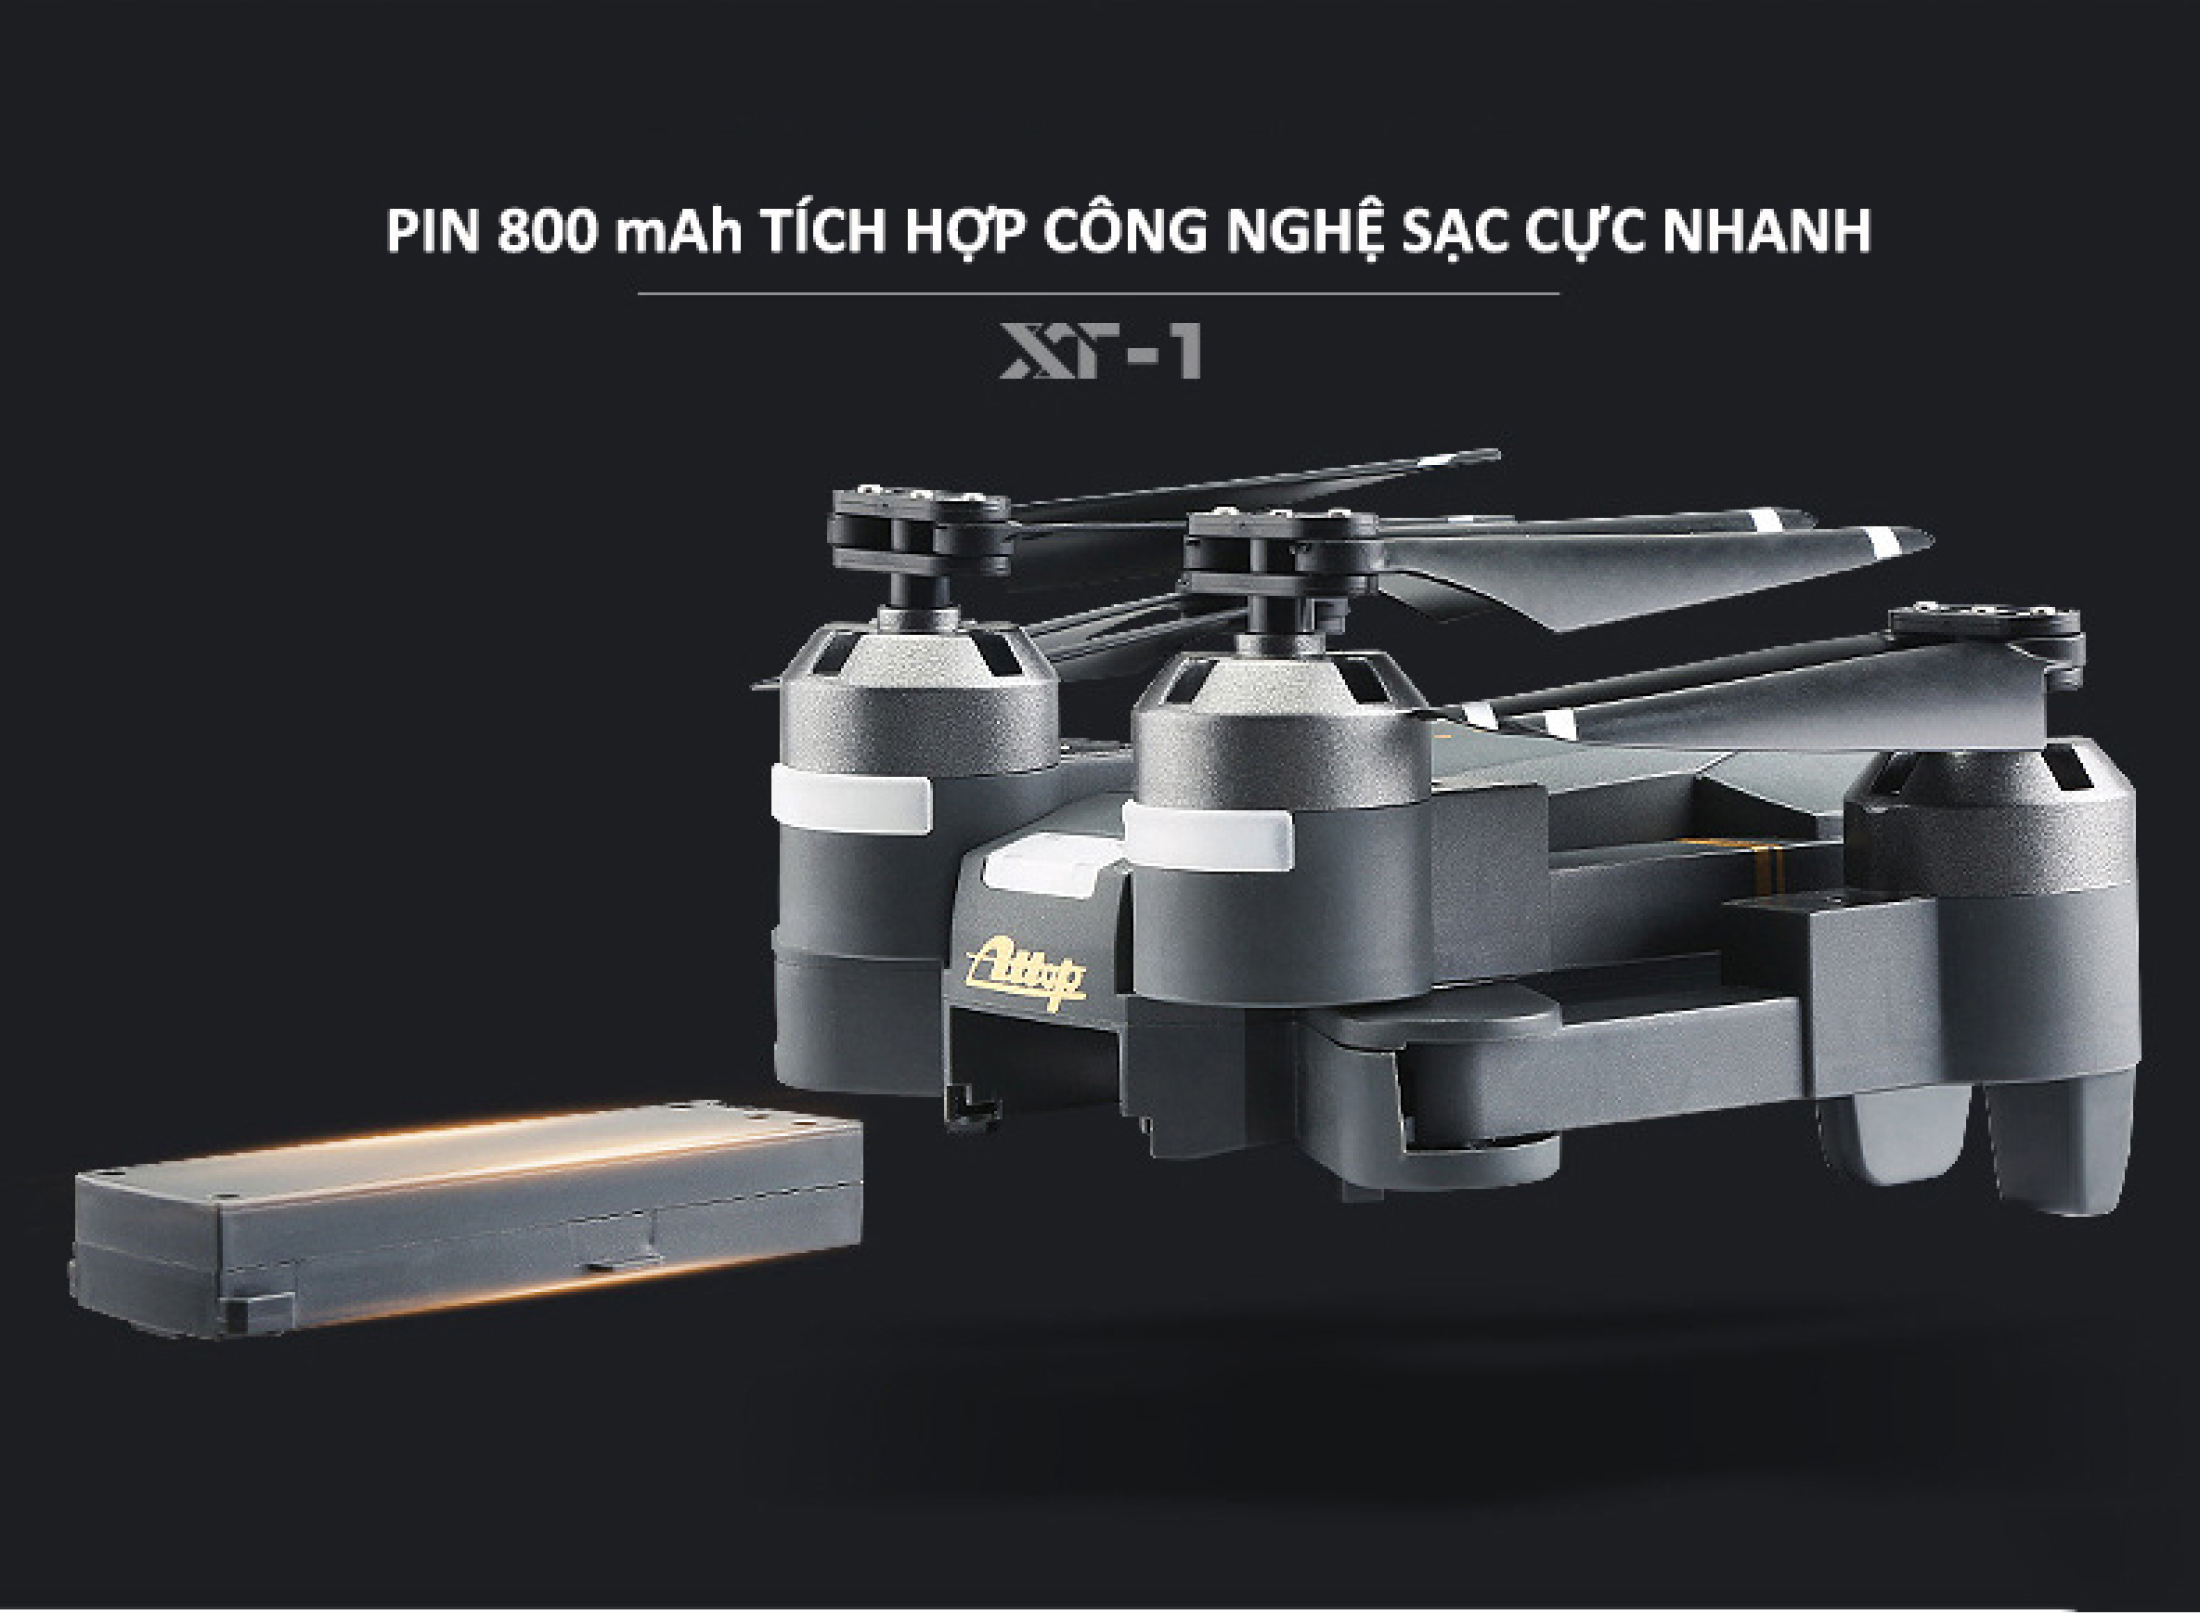 Máy Bay Điều Khiển Từ Xa Flycam E58 Pro, Drone Mini, Flycam mini giá rẻ, Máy bay điều khiển từ xa 4 cánh có camera, Máy bay không người lái, Đồ chơi trẻ em - hàng chính hãng